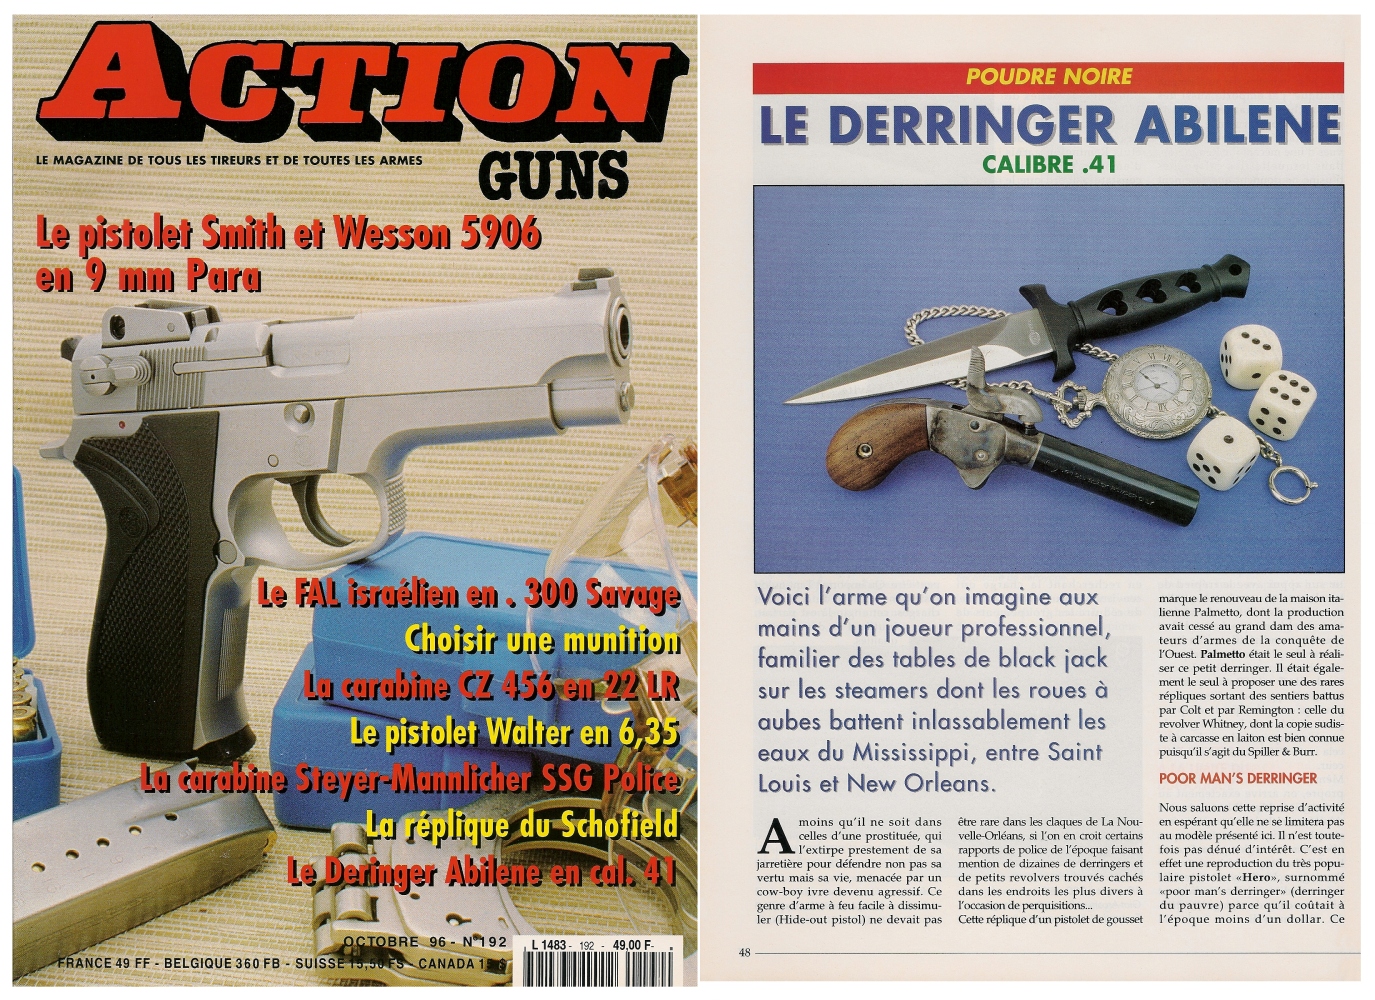 Le banc d’essai de la réplique de derringer Abilene a été publié sur 5 pages dans le magazine Action Guns n°192 (octobre 1996). 